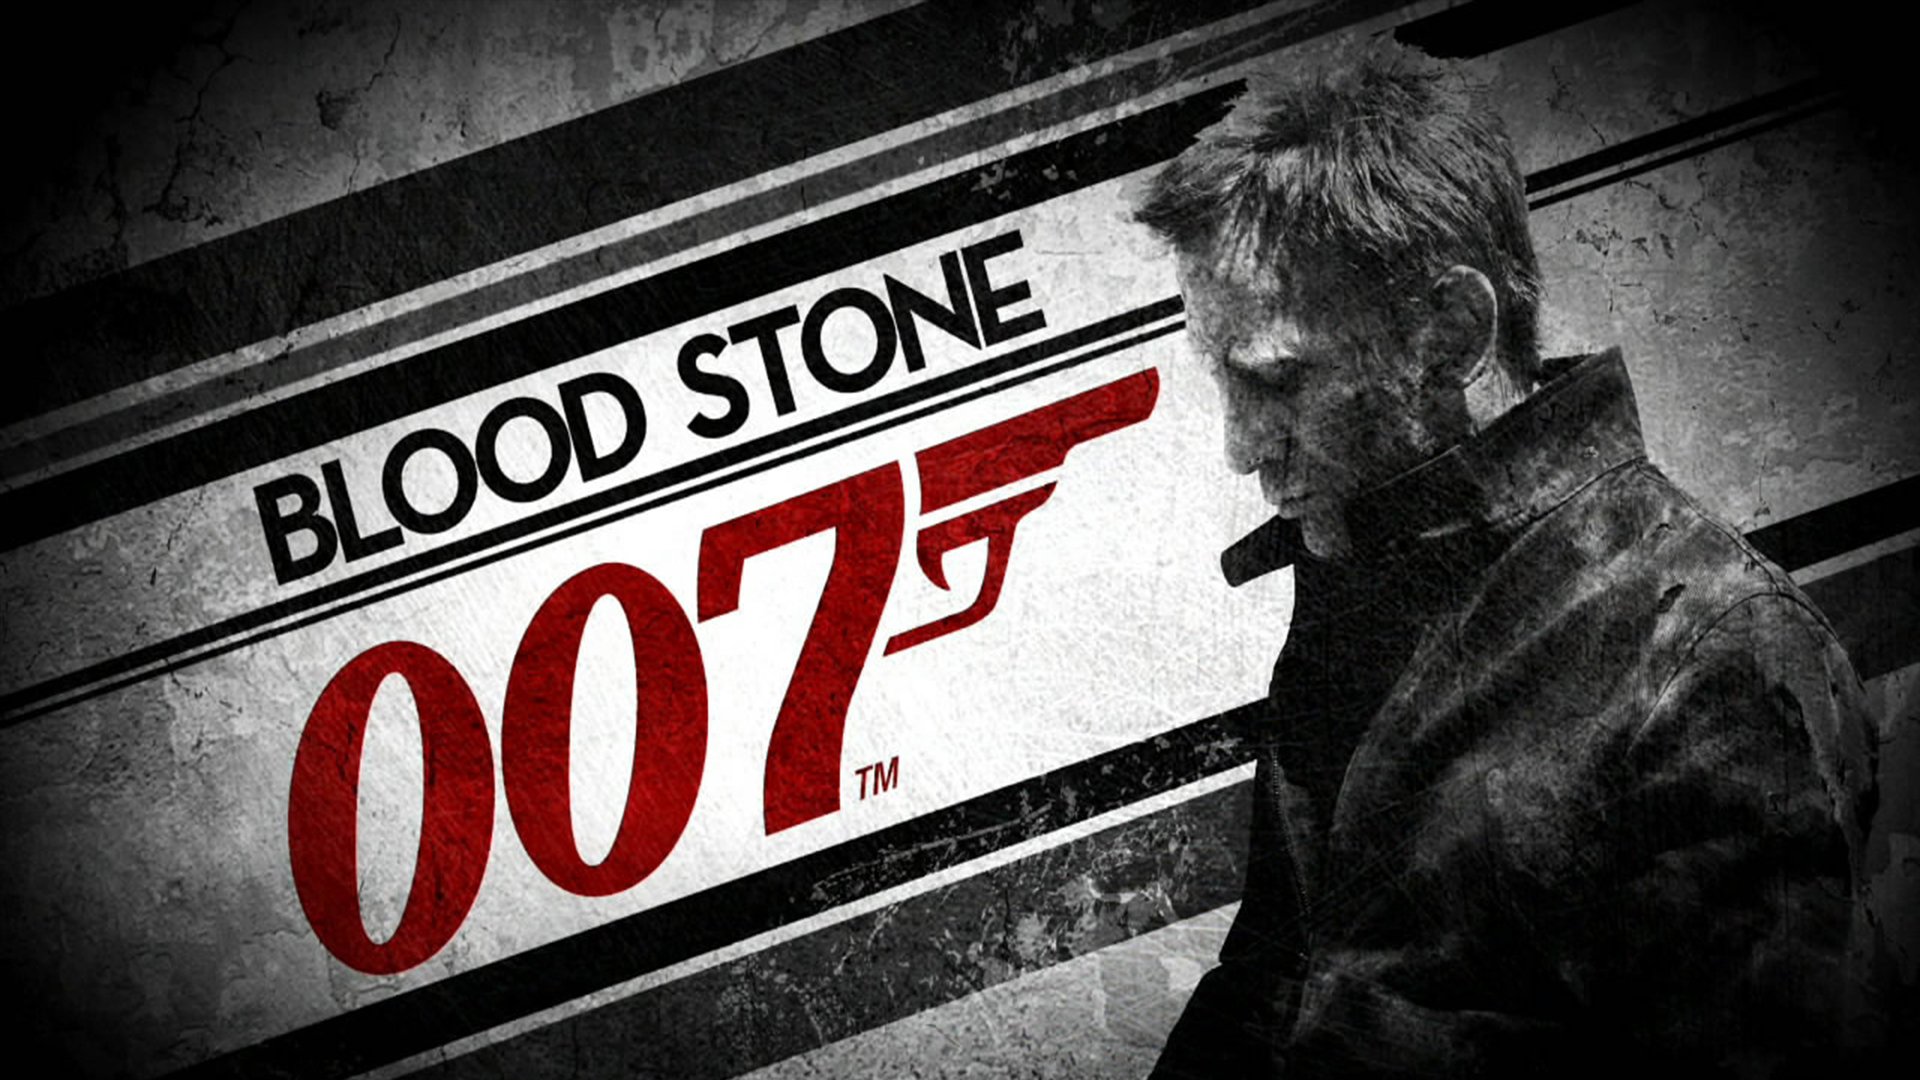 007 Blood Stone Game Pc - HD Wallpaper 